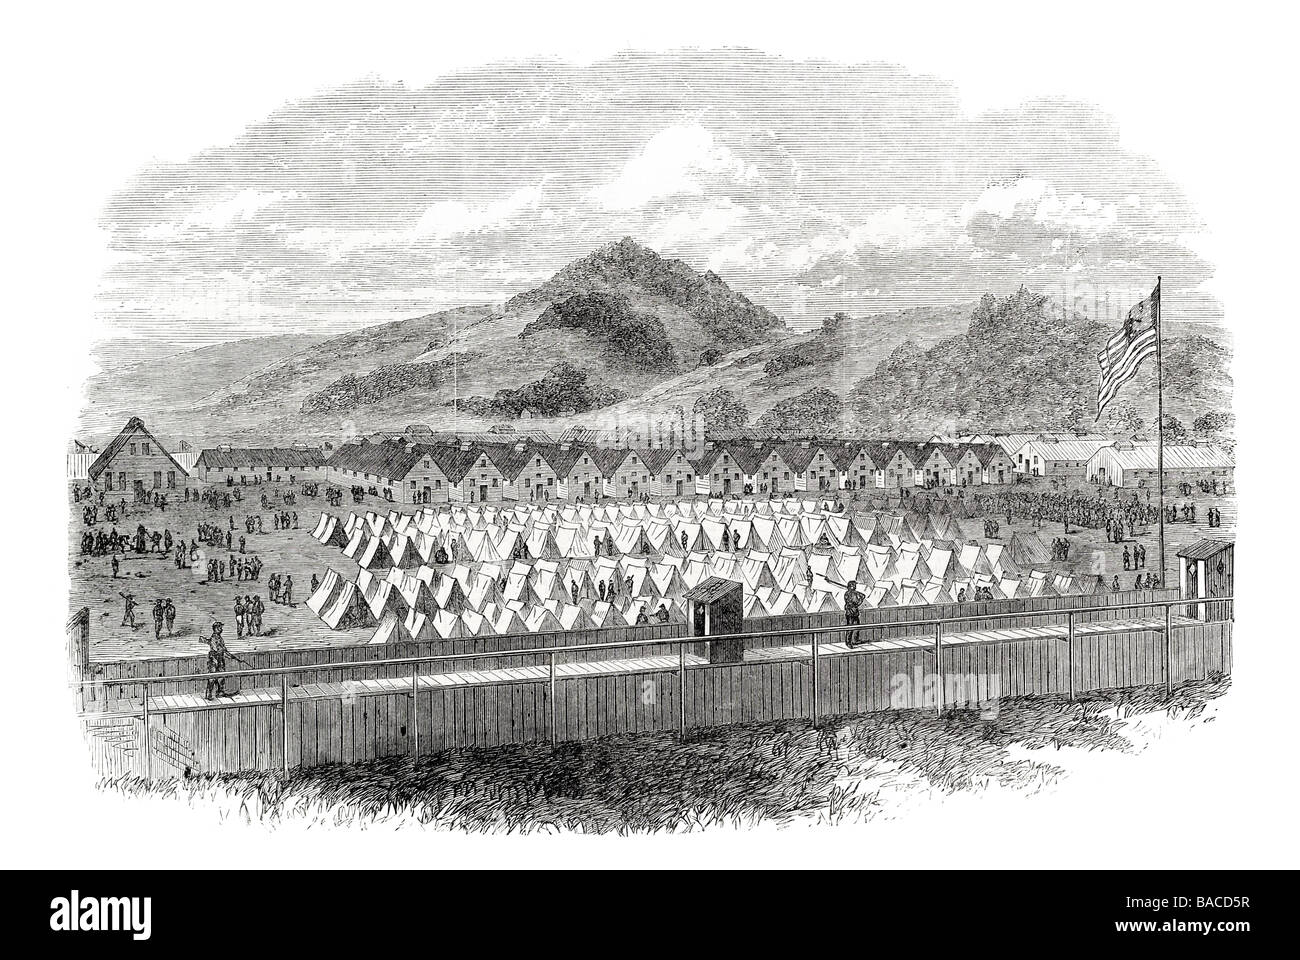 Lager der Konföderierten Gefangenen in Elmira New York Unionsarmee Krieg Gefängnis 1865 Stockfoto